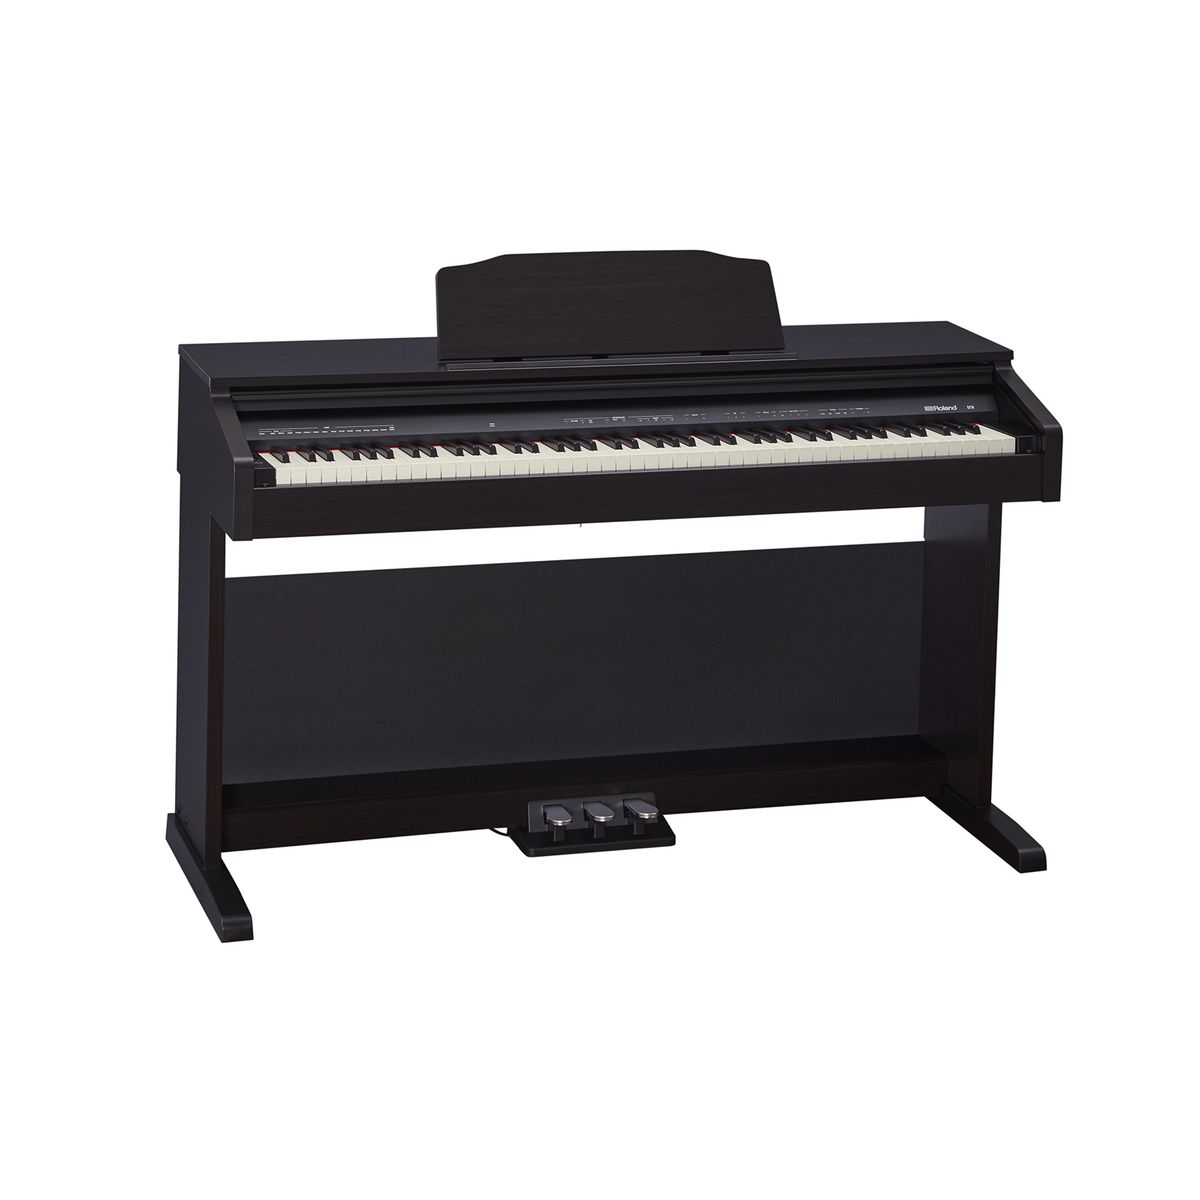 Цифровые пианино Roland RP30 музыкальное пианино утёнок 10 клавиш работает от батареек